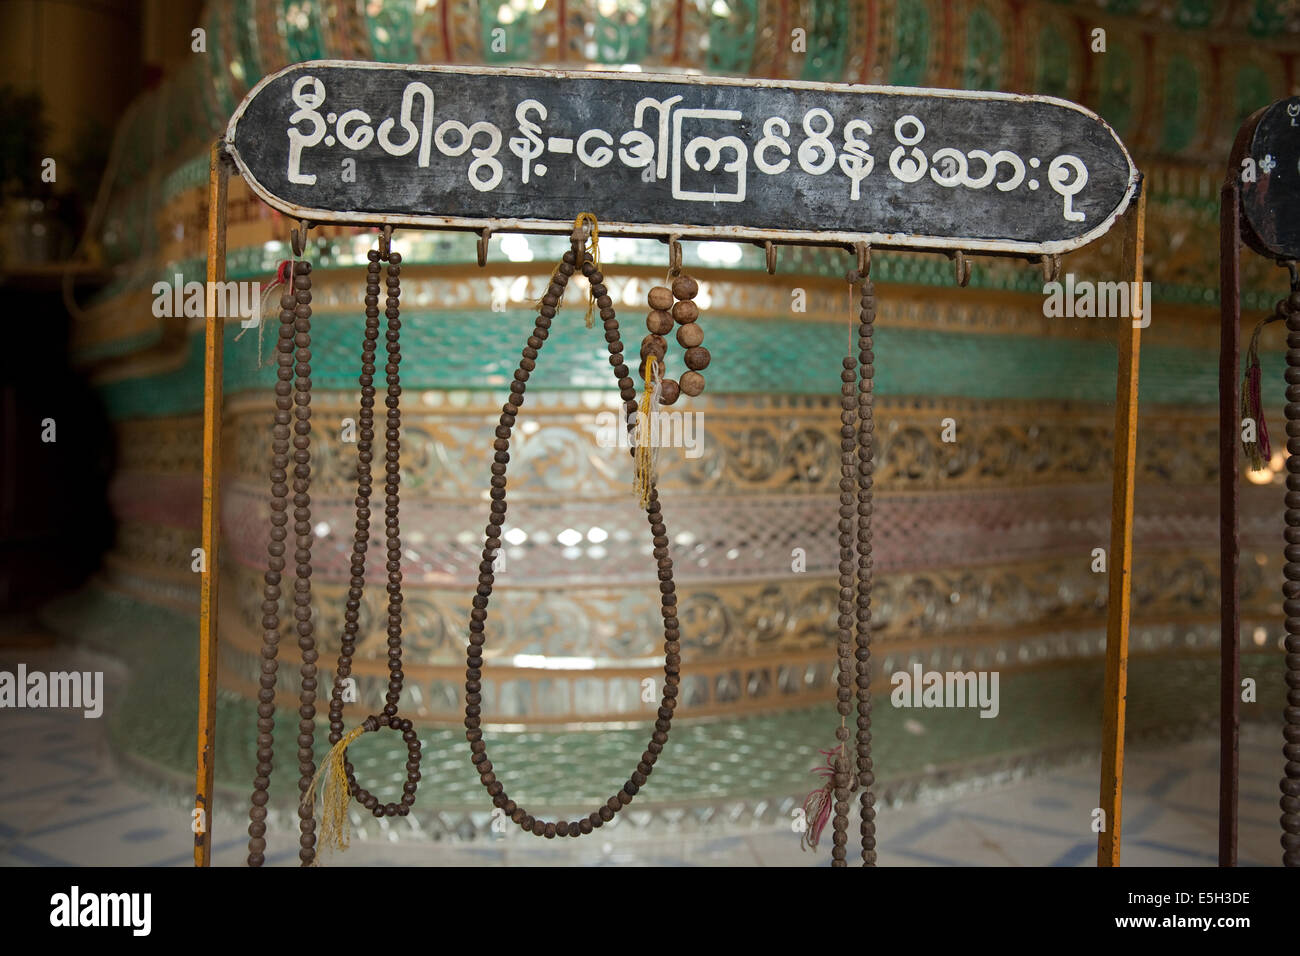 Buddhistische Gebetskette für Darlehen im Inneren des Tempels Mann Paya, Salay, Myanmar (Burma). Stockfoto